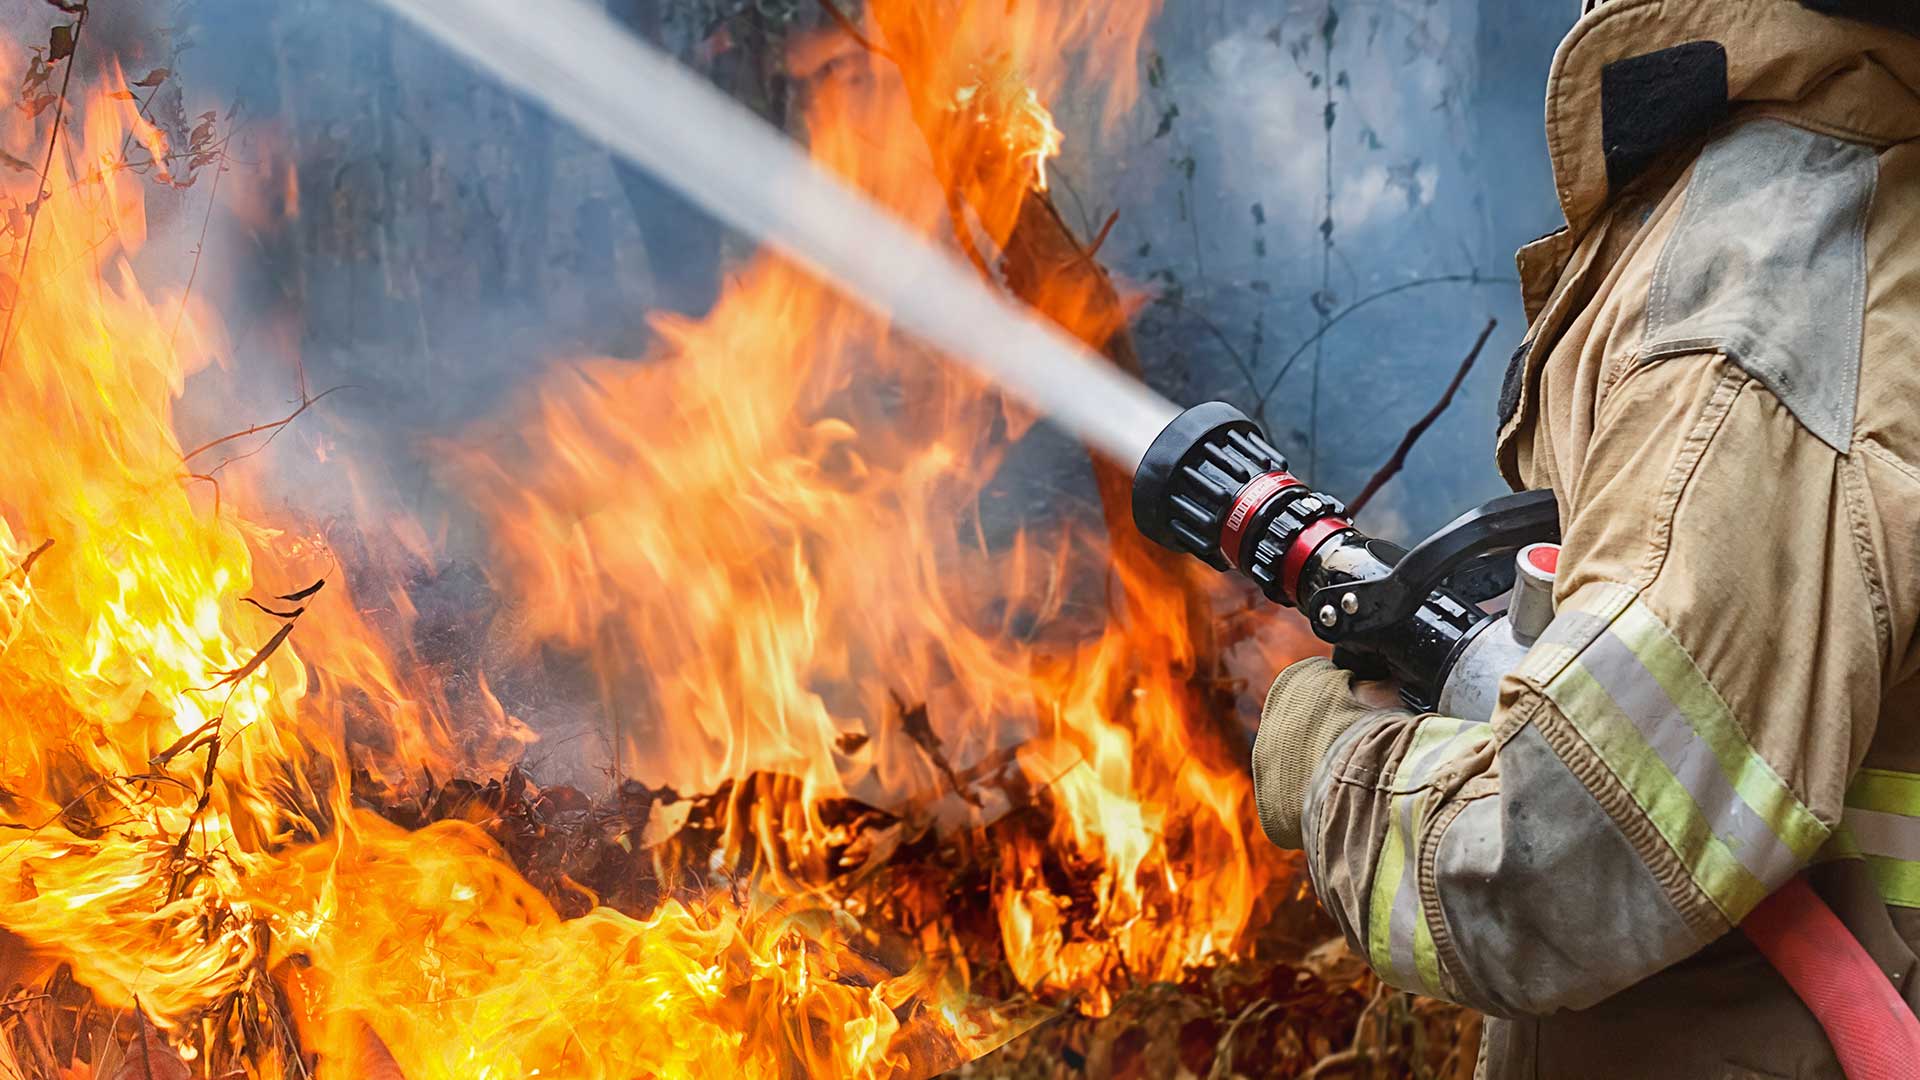 Աբովյանում այրվում է սնկի մշակման մոտ 3000 խմ կուտակված թափոն (տեսանյութ)